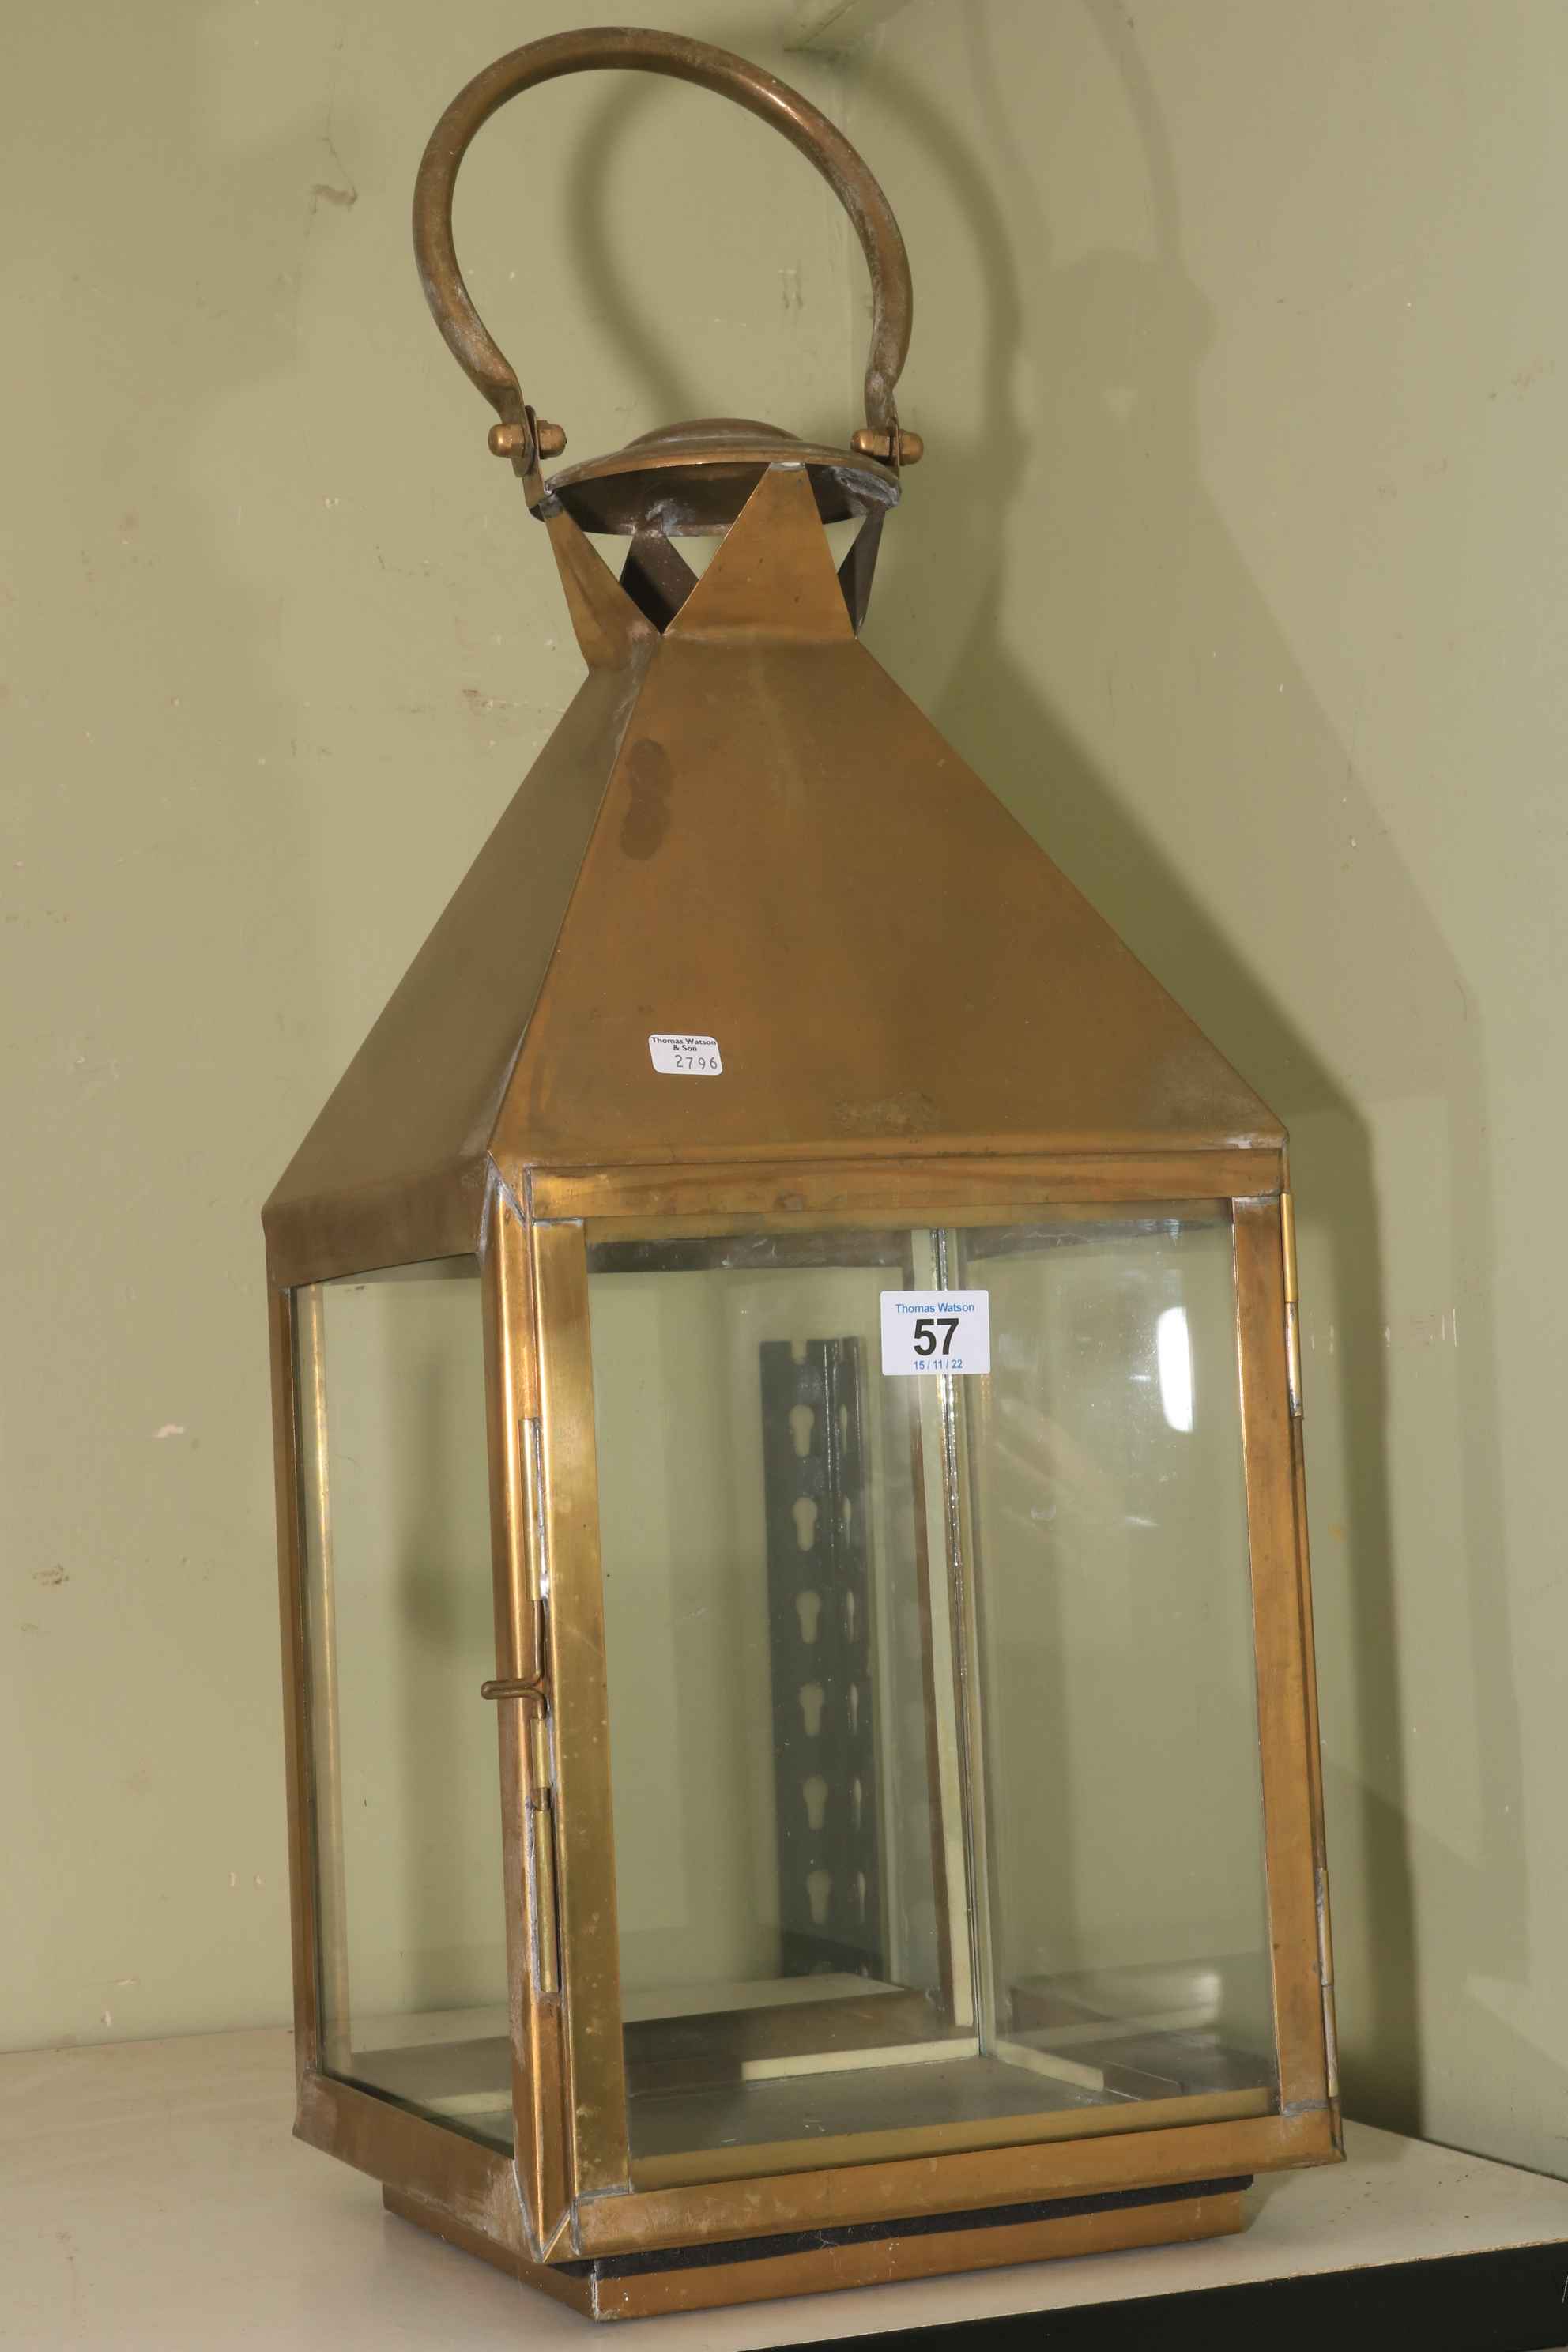 Brass hanging lantern.